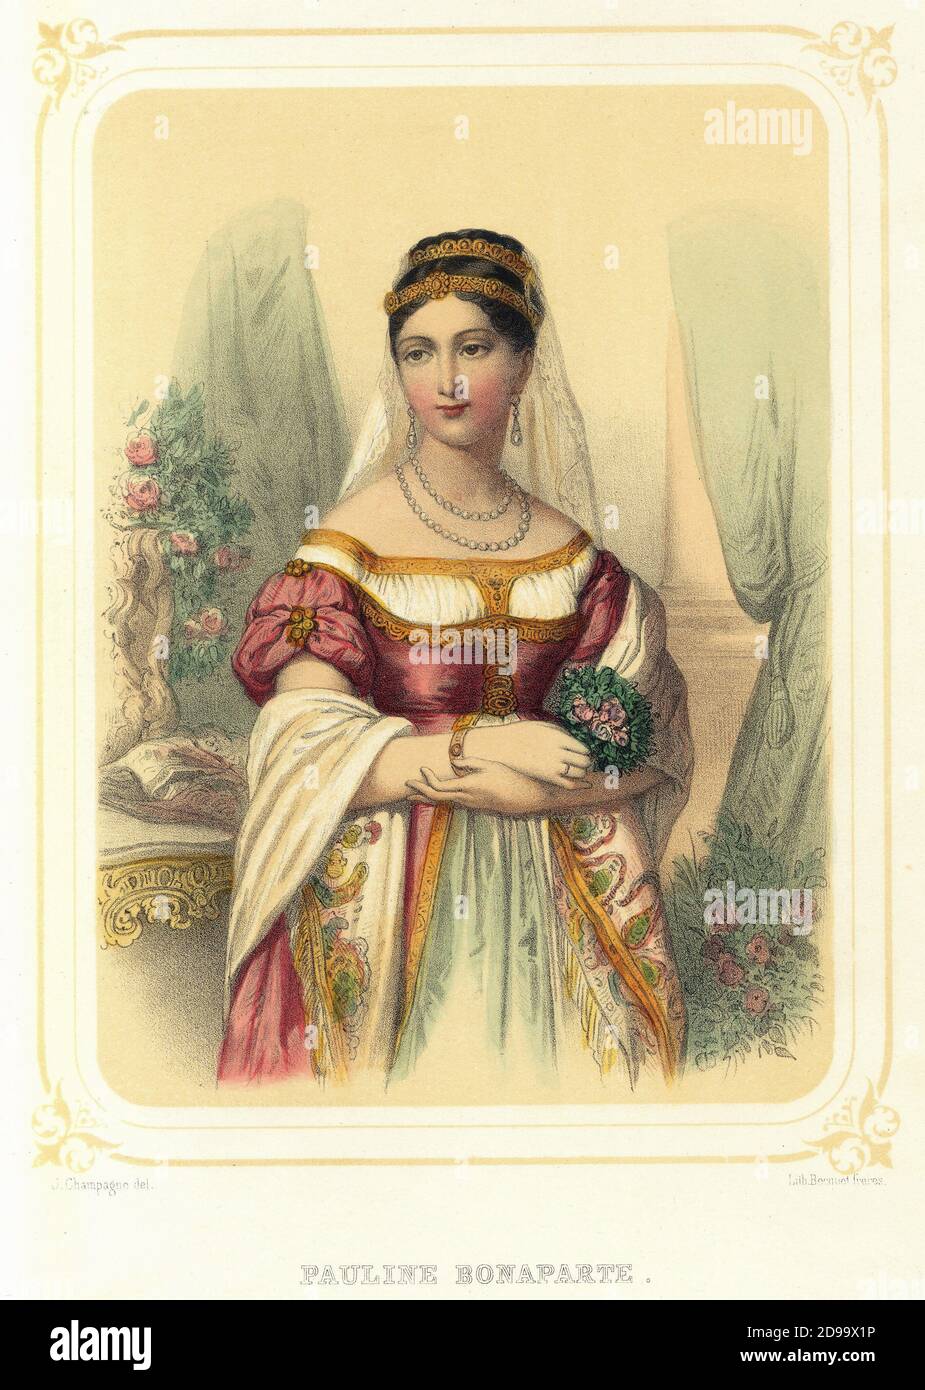 PAULINE BONAPARTE ( Maria Paolina , 1780 - 1825 ) Duchess of Guastalla ,  sister of Imperor Napoleone Bonaparte , married at roman prince Camillo  Borghese in 1803 - portrait by J.